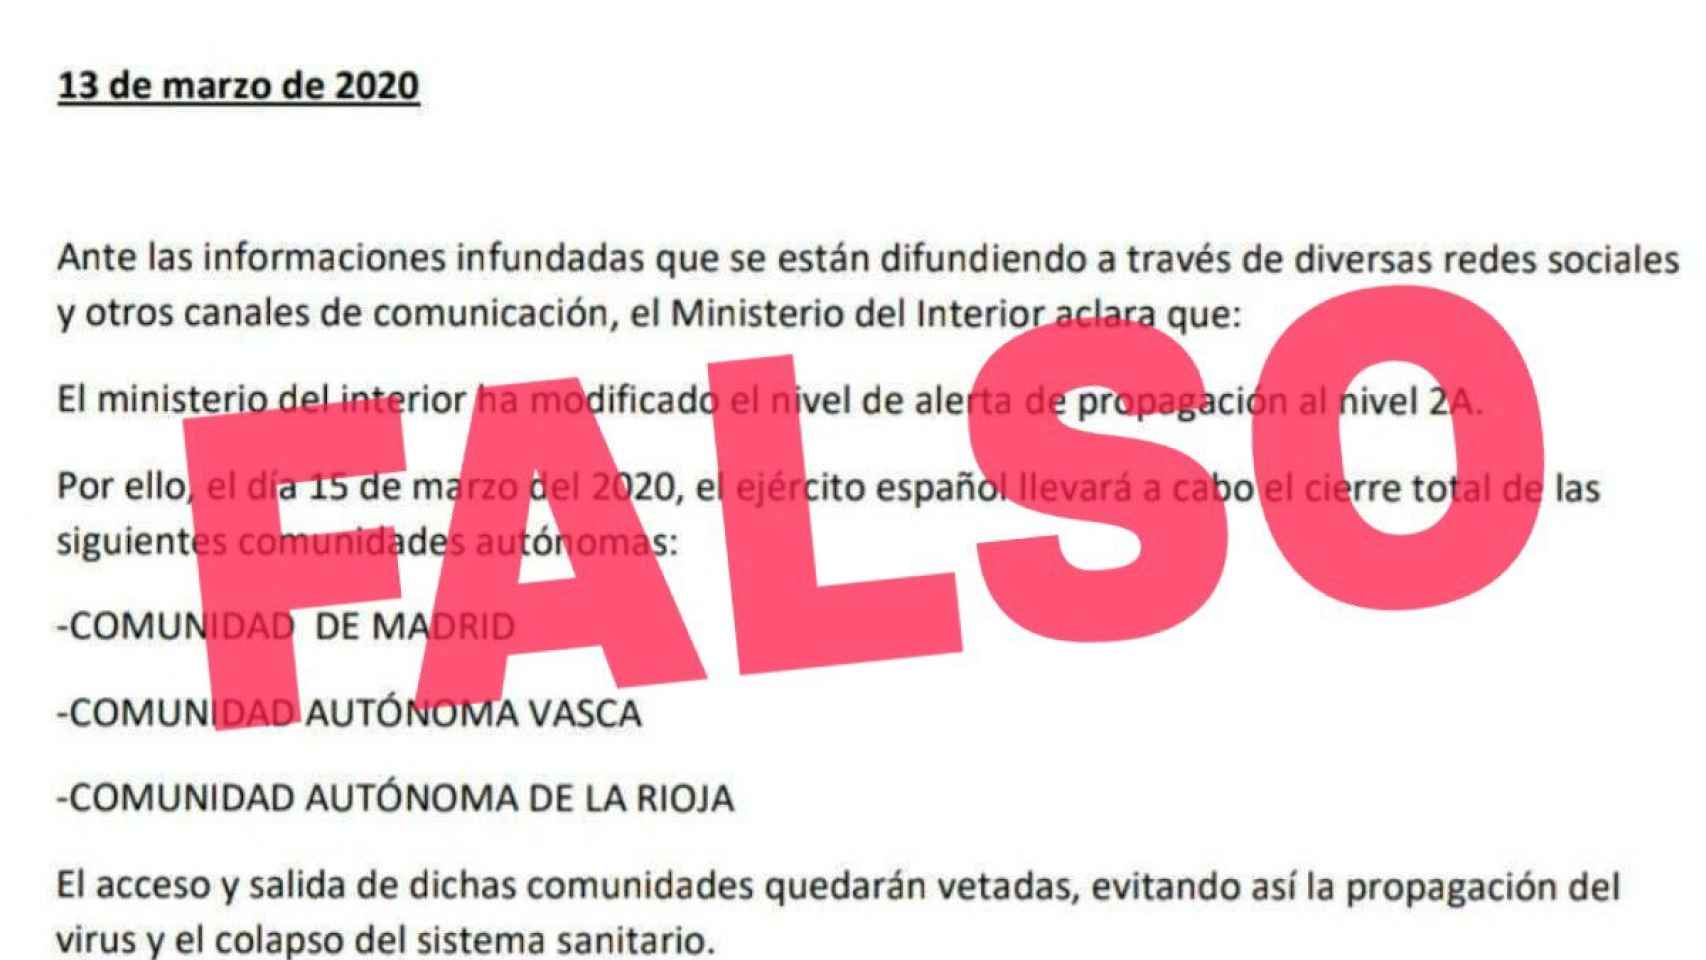 Documento falso desmentido por el Gobierno sobre un presunto cierre de Madrid, La Rioja y el País Vasco a causa del coronavirus.